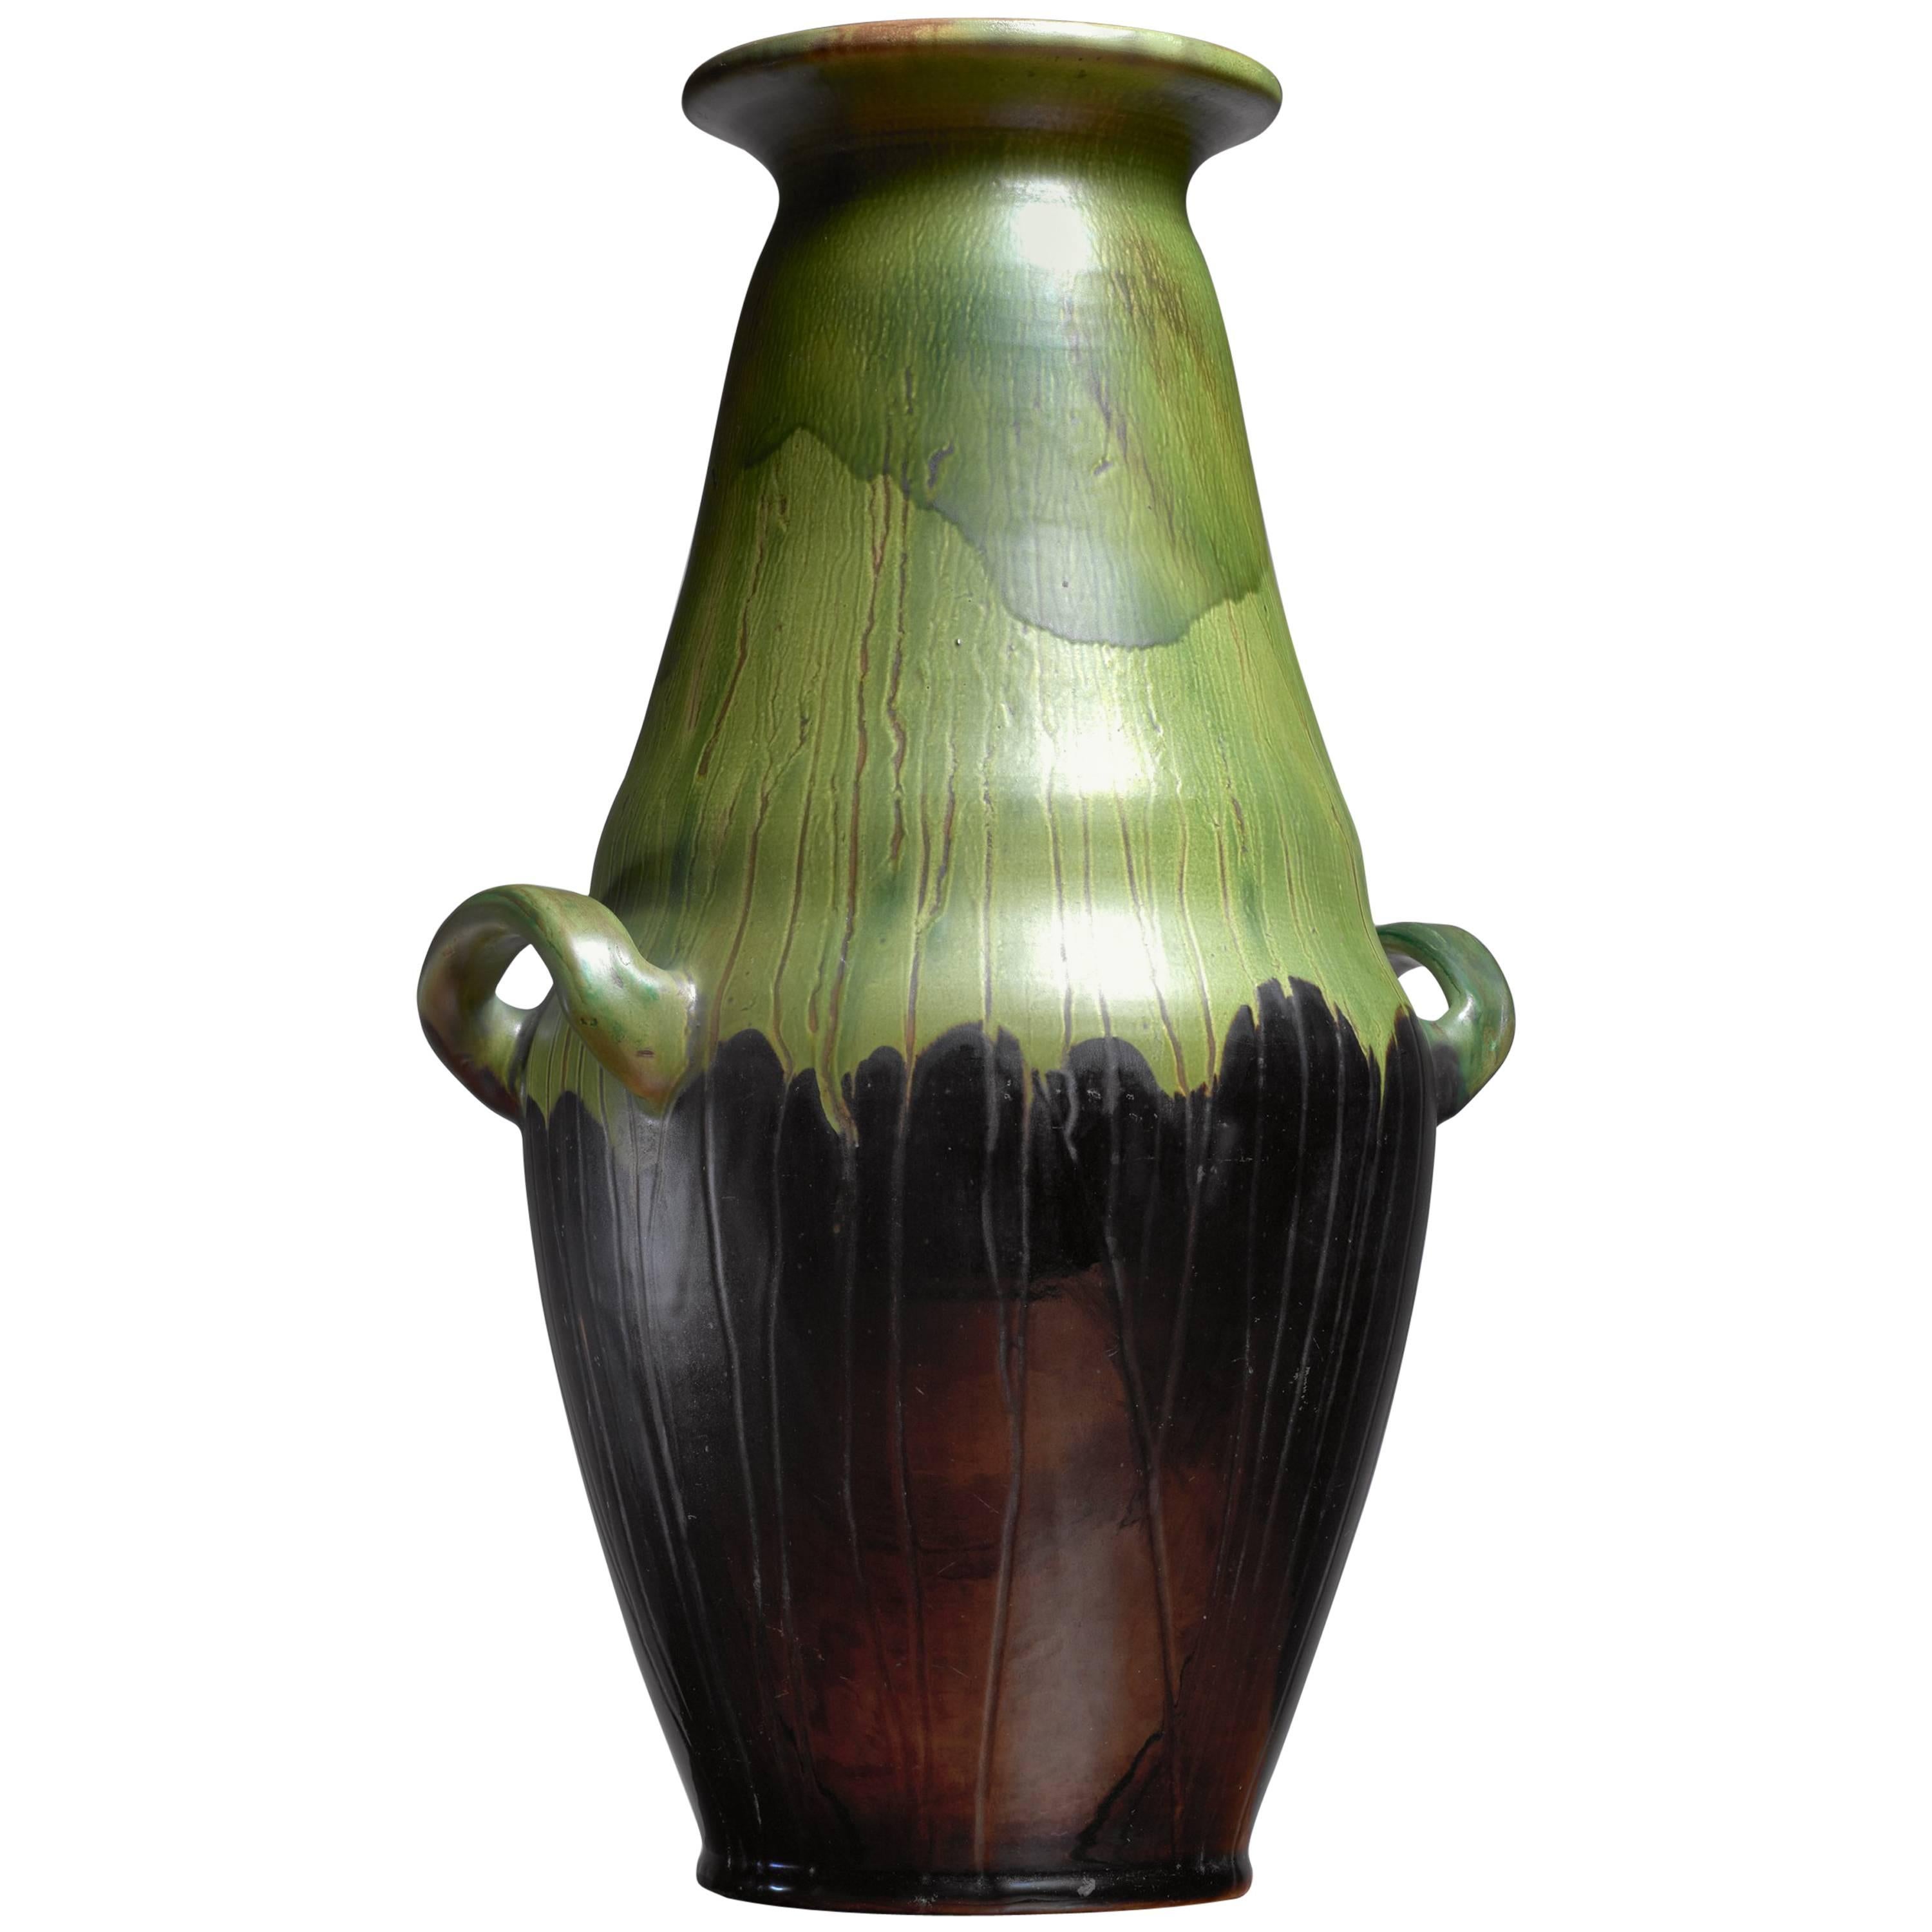 Large Black and Green Ceramic Kahler Floor Vase, Denmark, 1910